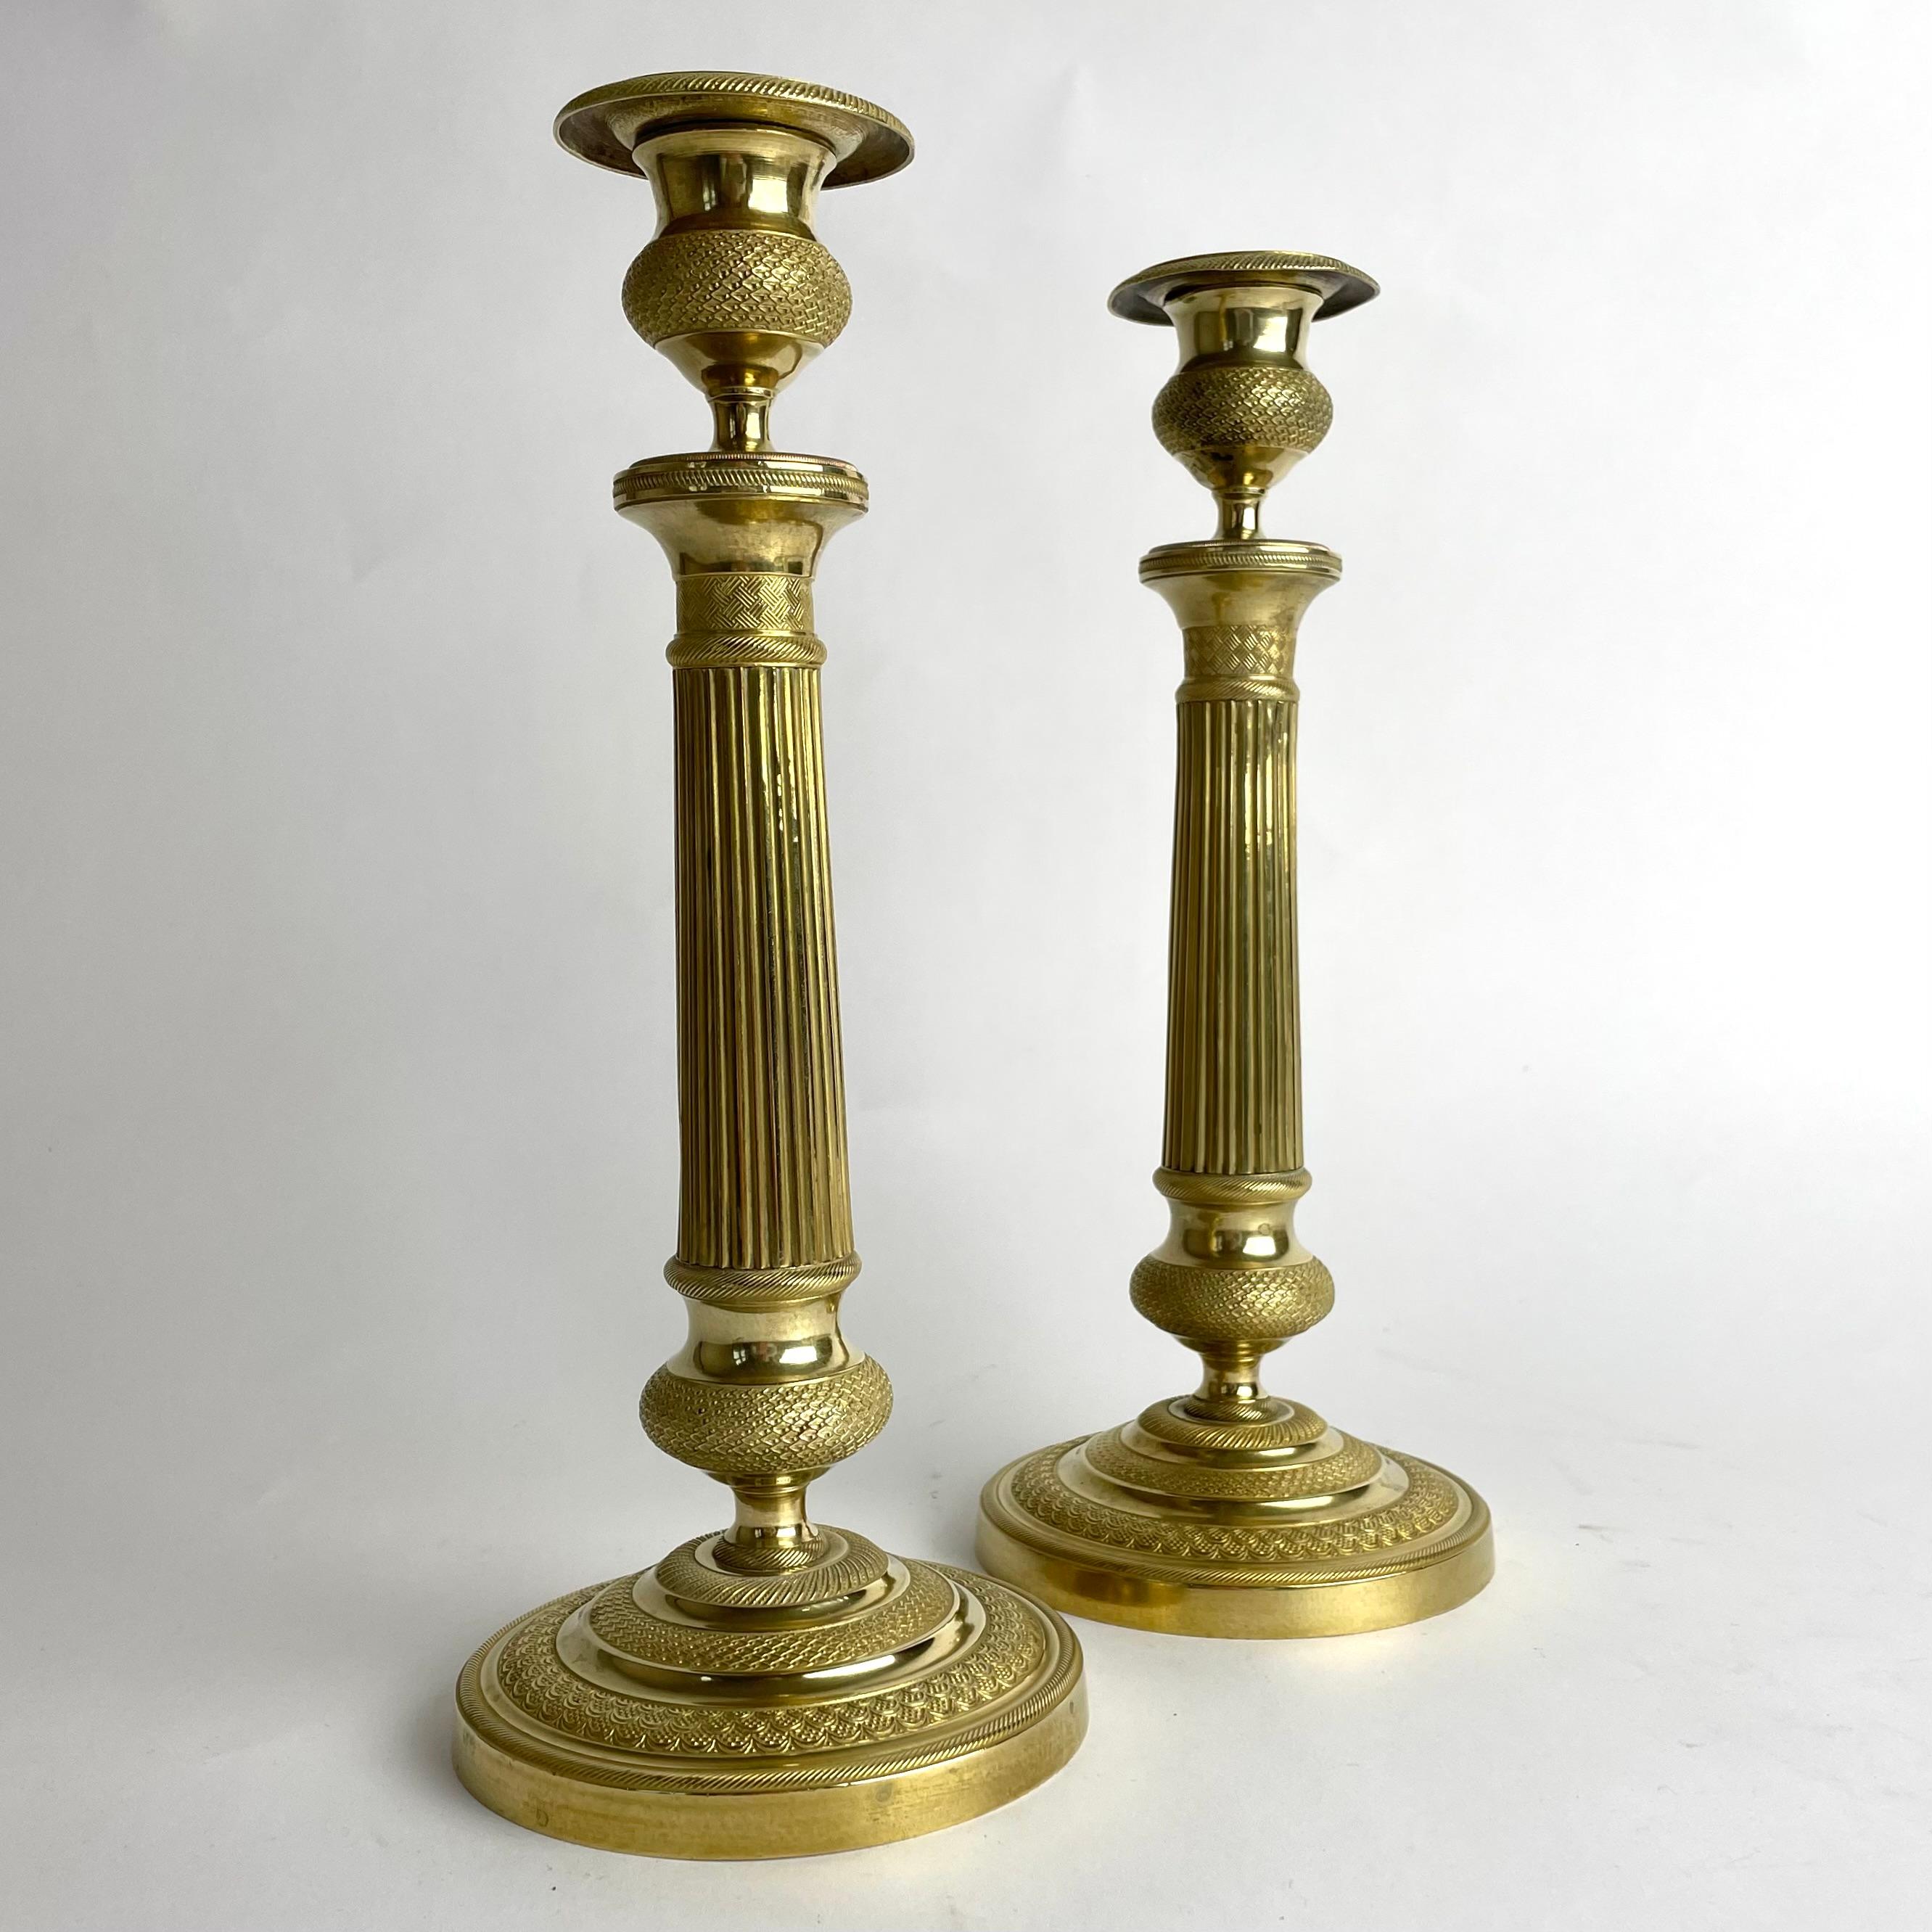 Une très élégante paire de chandeliers Empire en bronze doré. Fabriqué en France dans les années 1820. Richement décorée dans un style d'époque.


Usure correspondant à l'âge et à l'usage. 